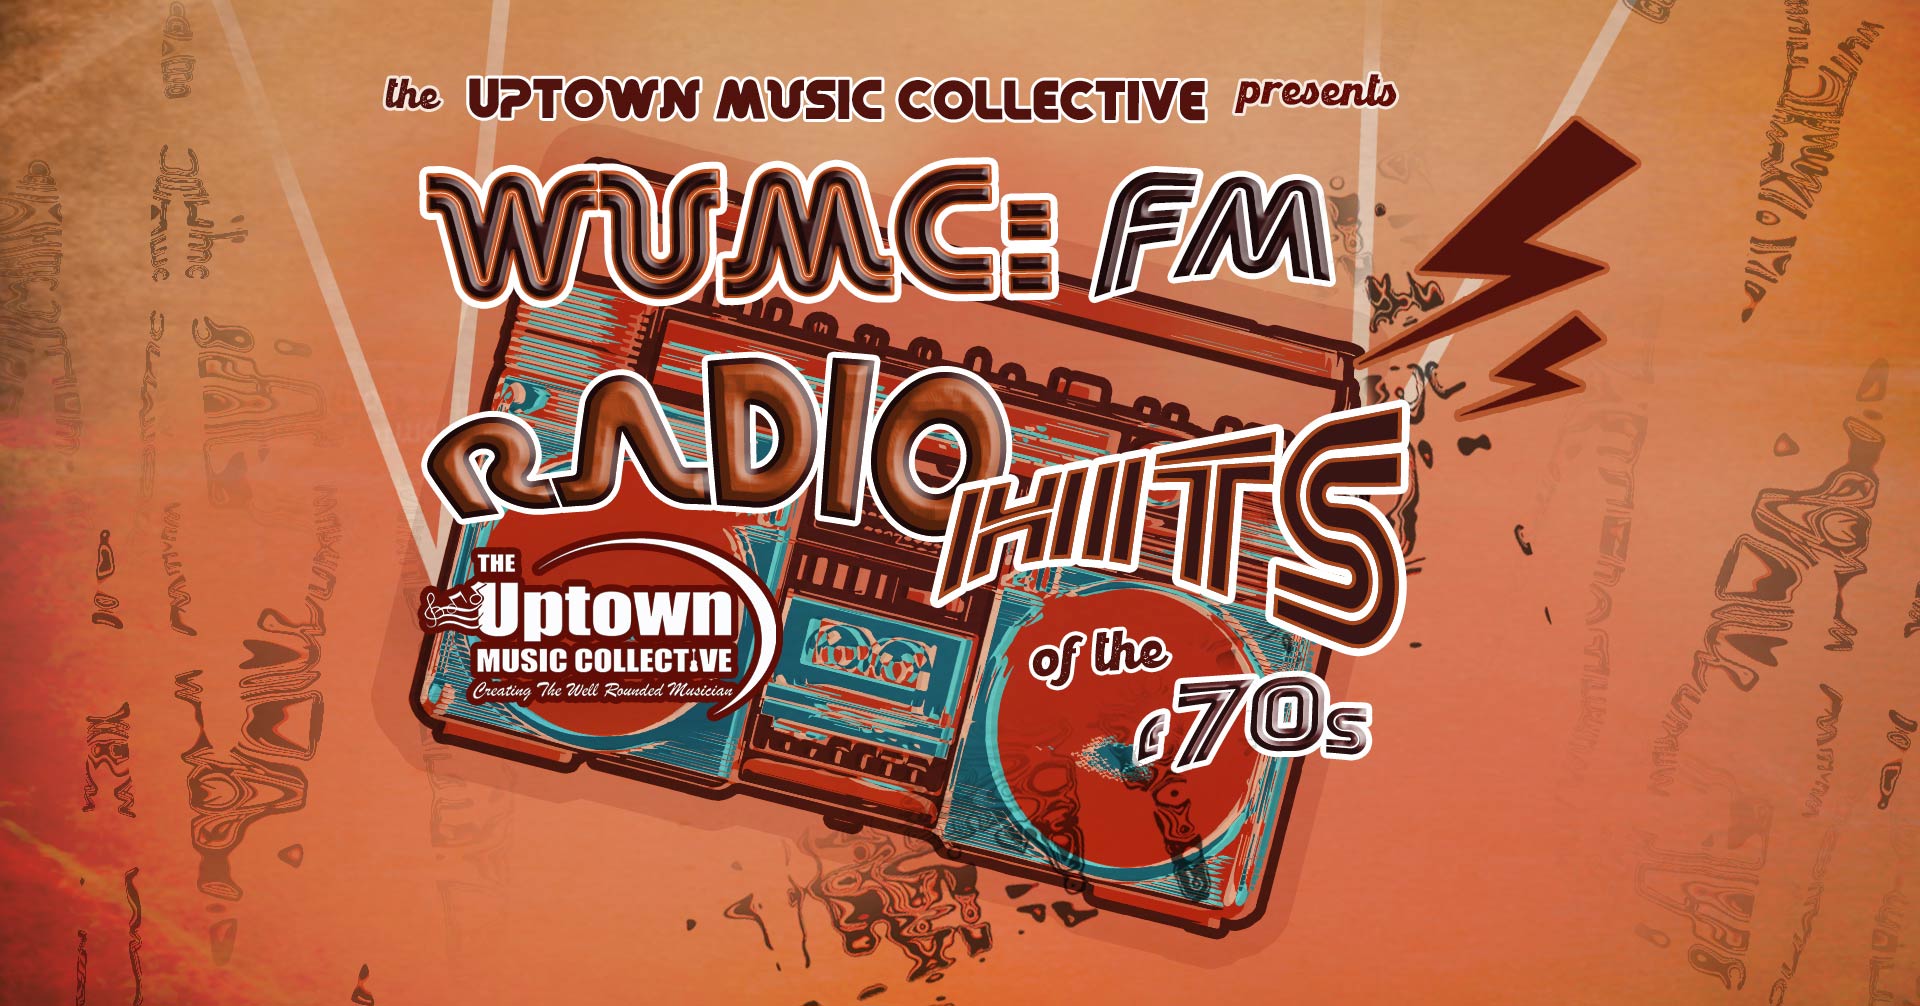 WUMC: FM Radio Hits of the '70s